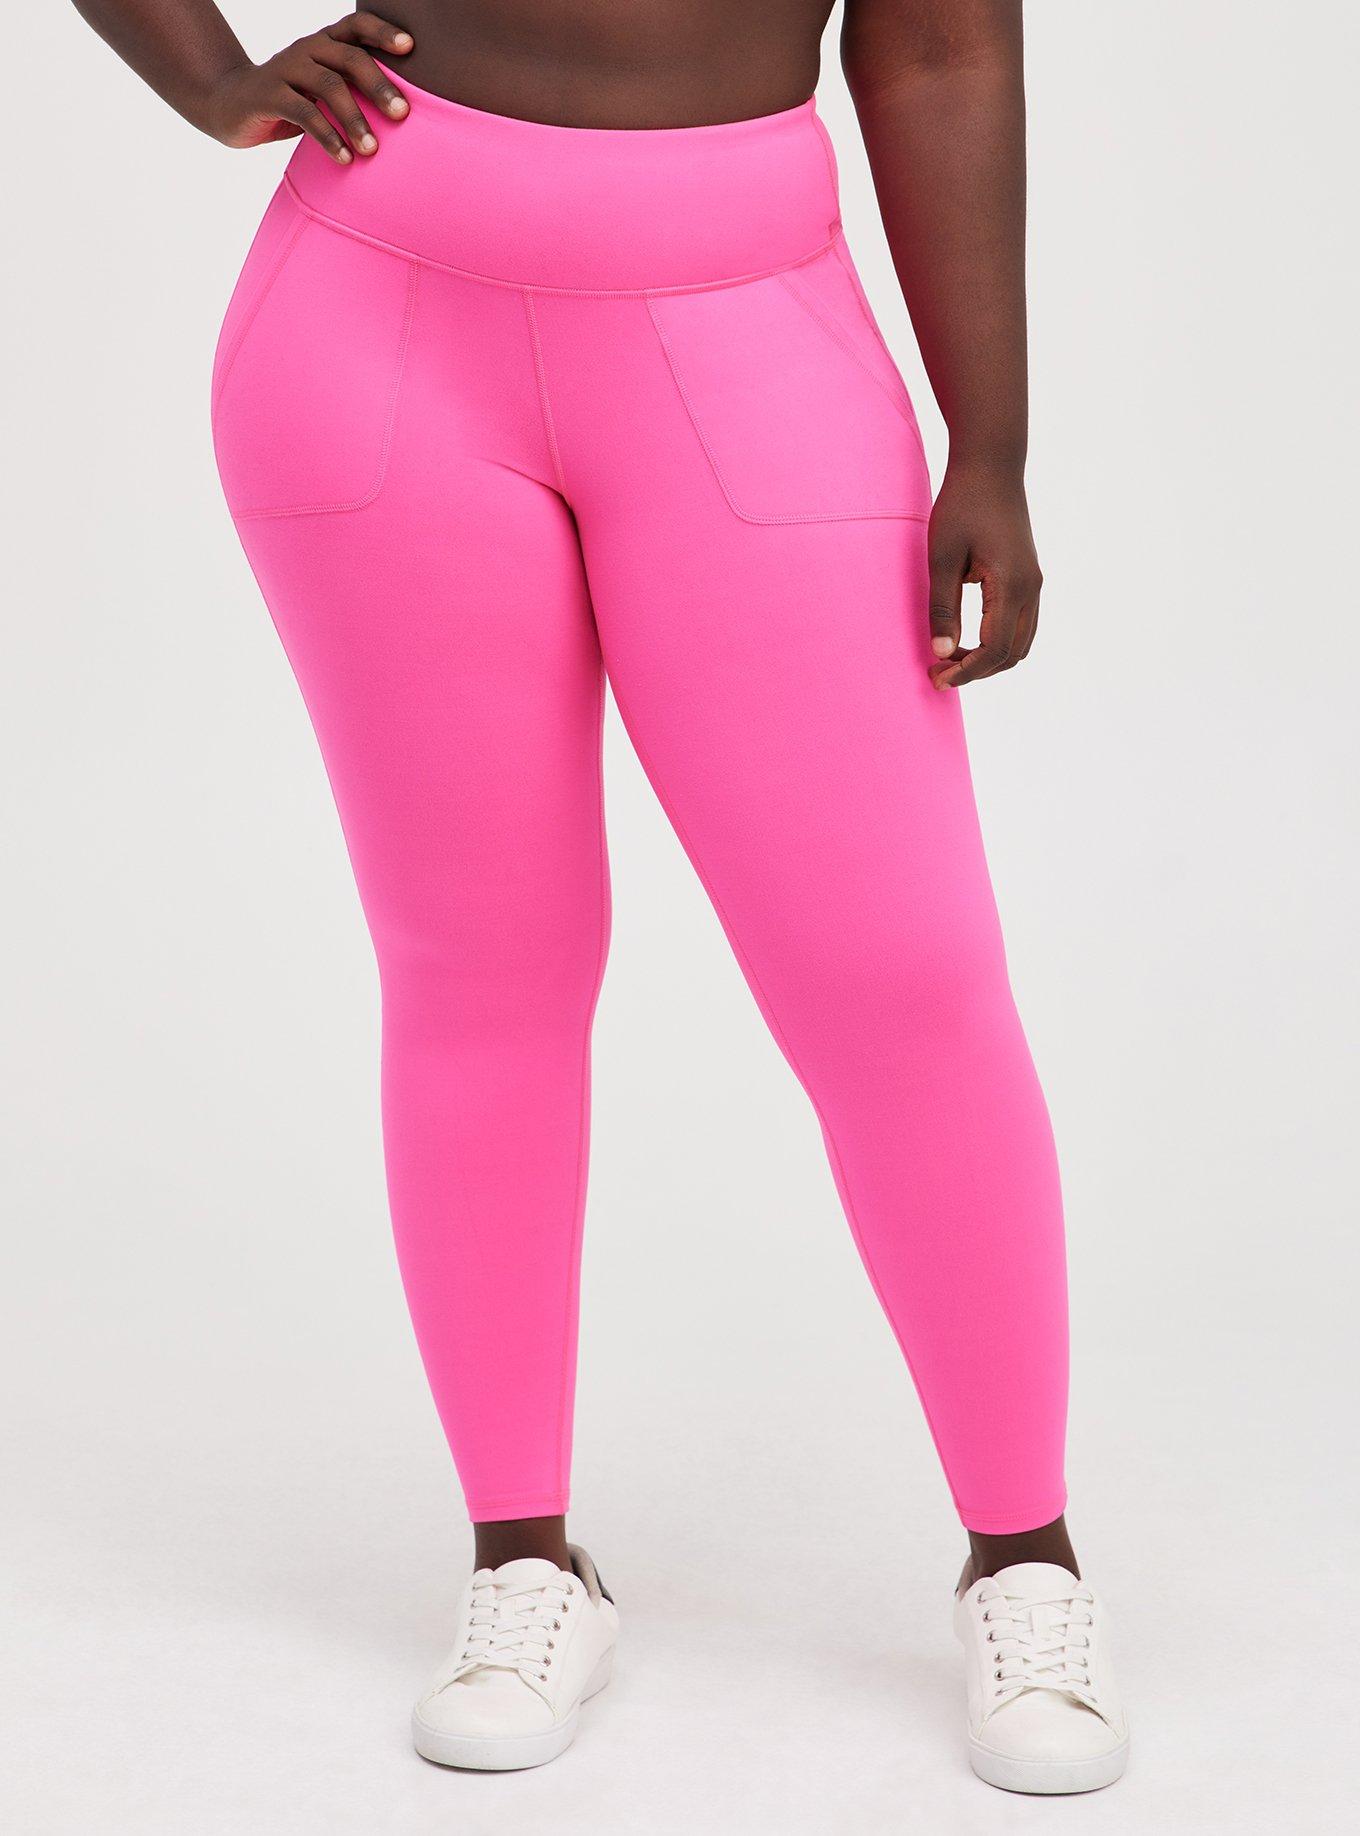 Torrid Pink Sports Bra Size 3X Plus (3) (Plus) - 63% off